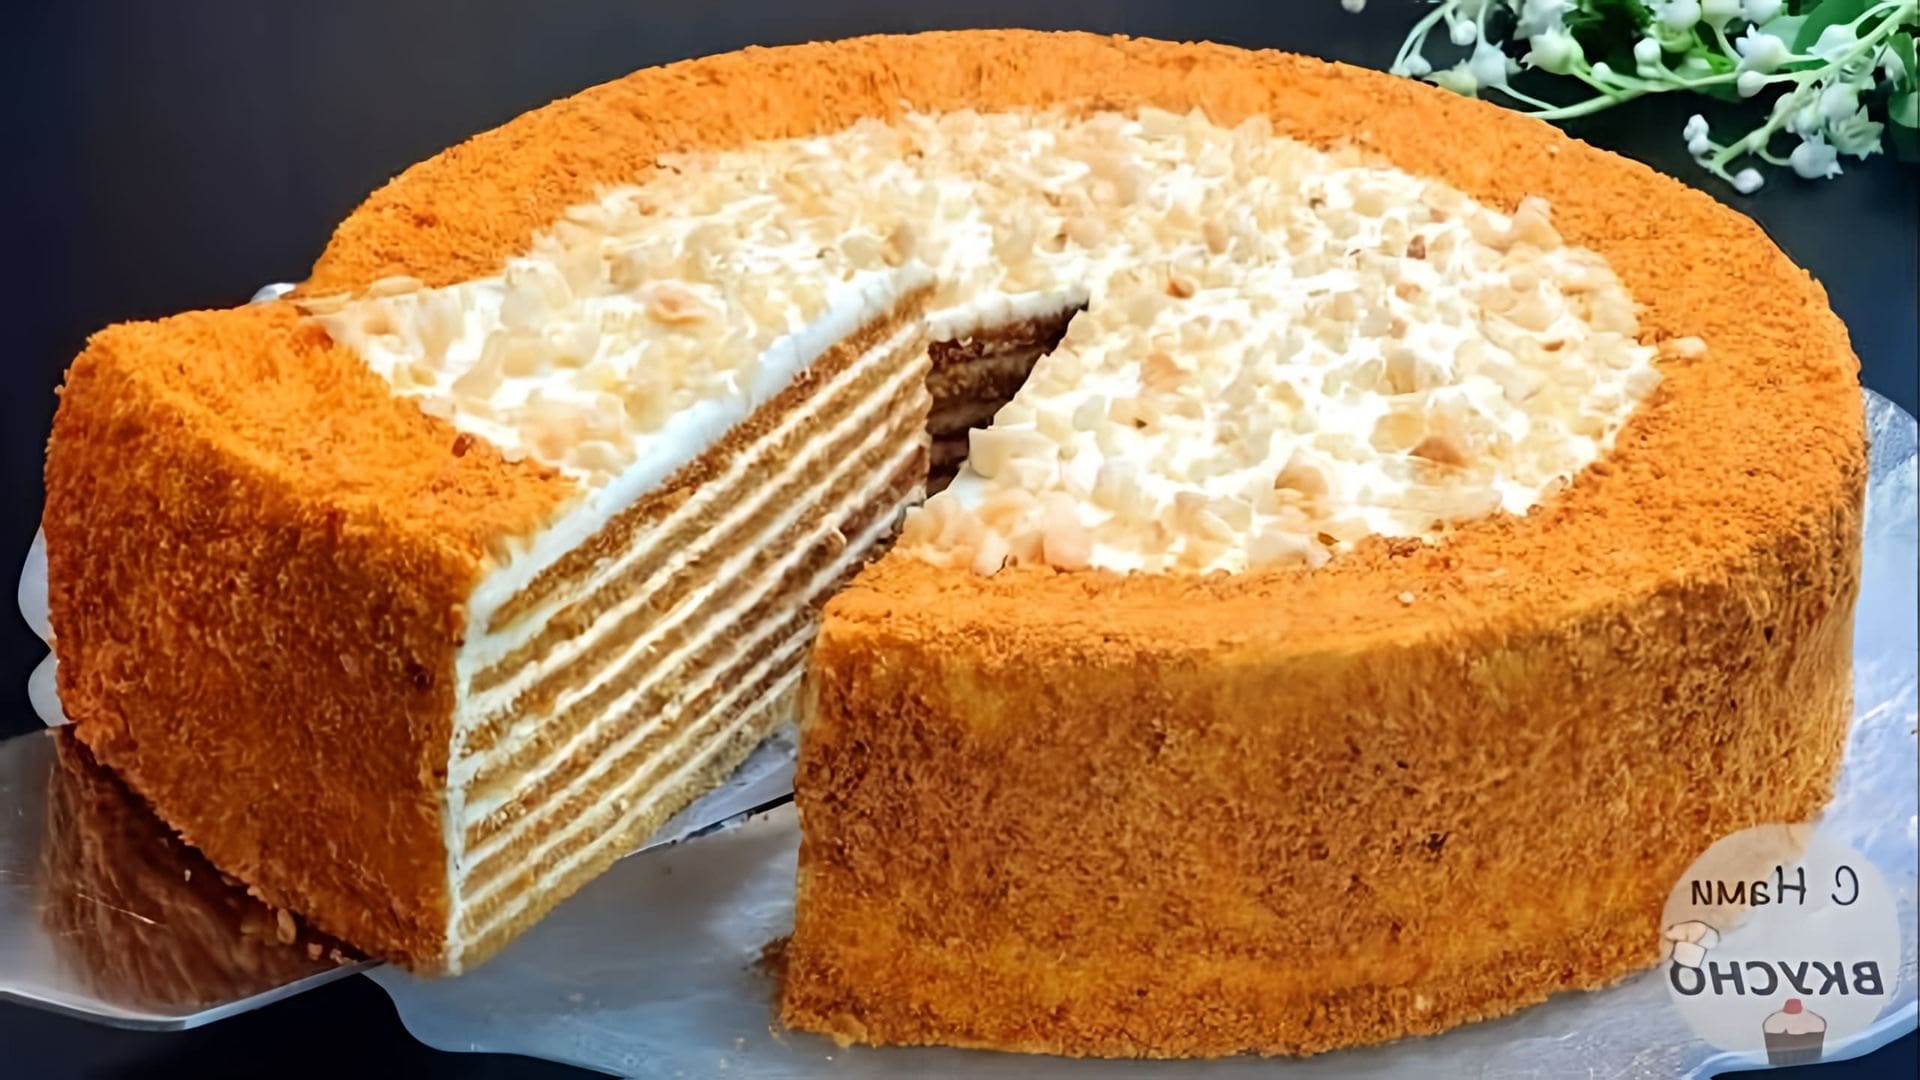 В этом видео демонстрируется рецепт приготовления торта "Медовик" со сметанным кремом